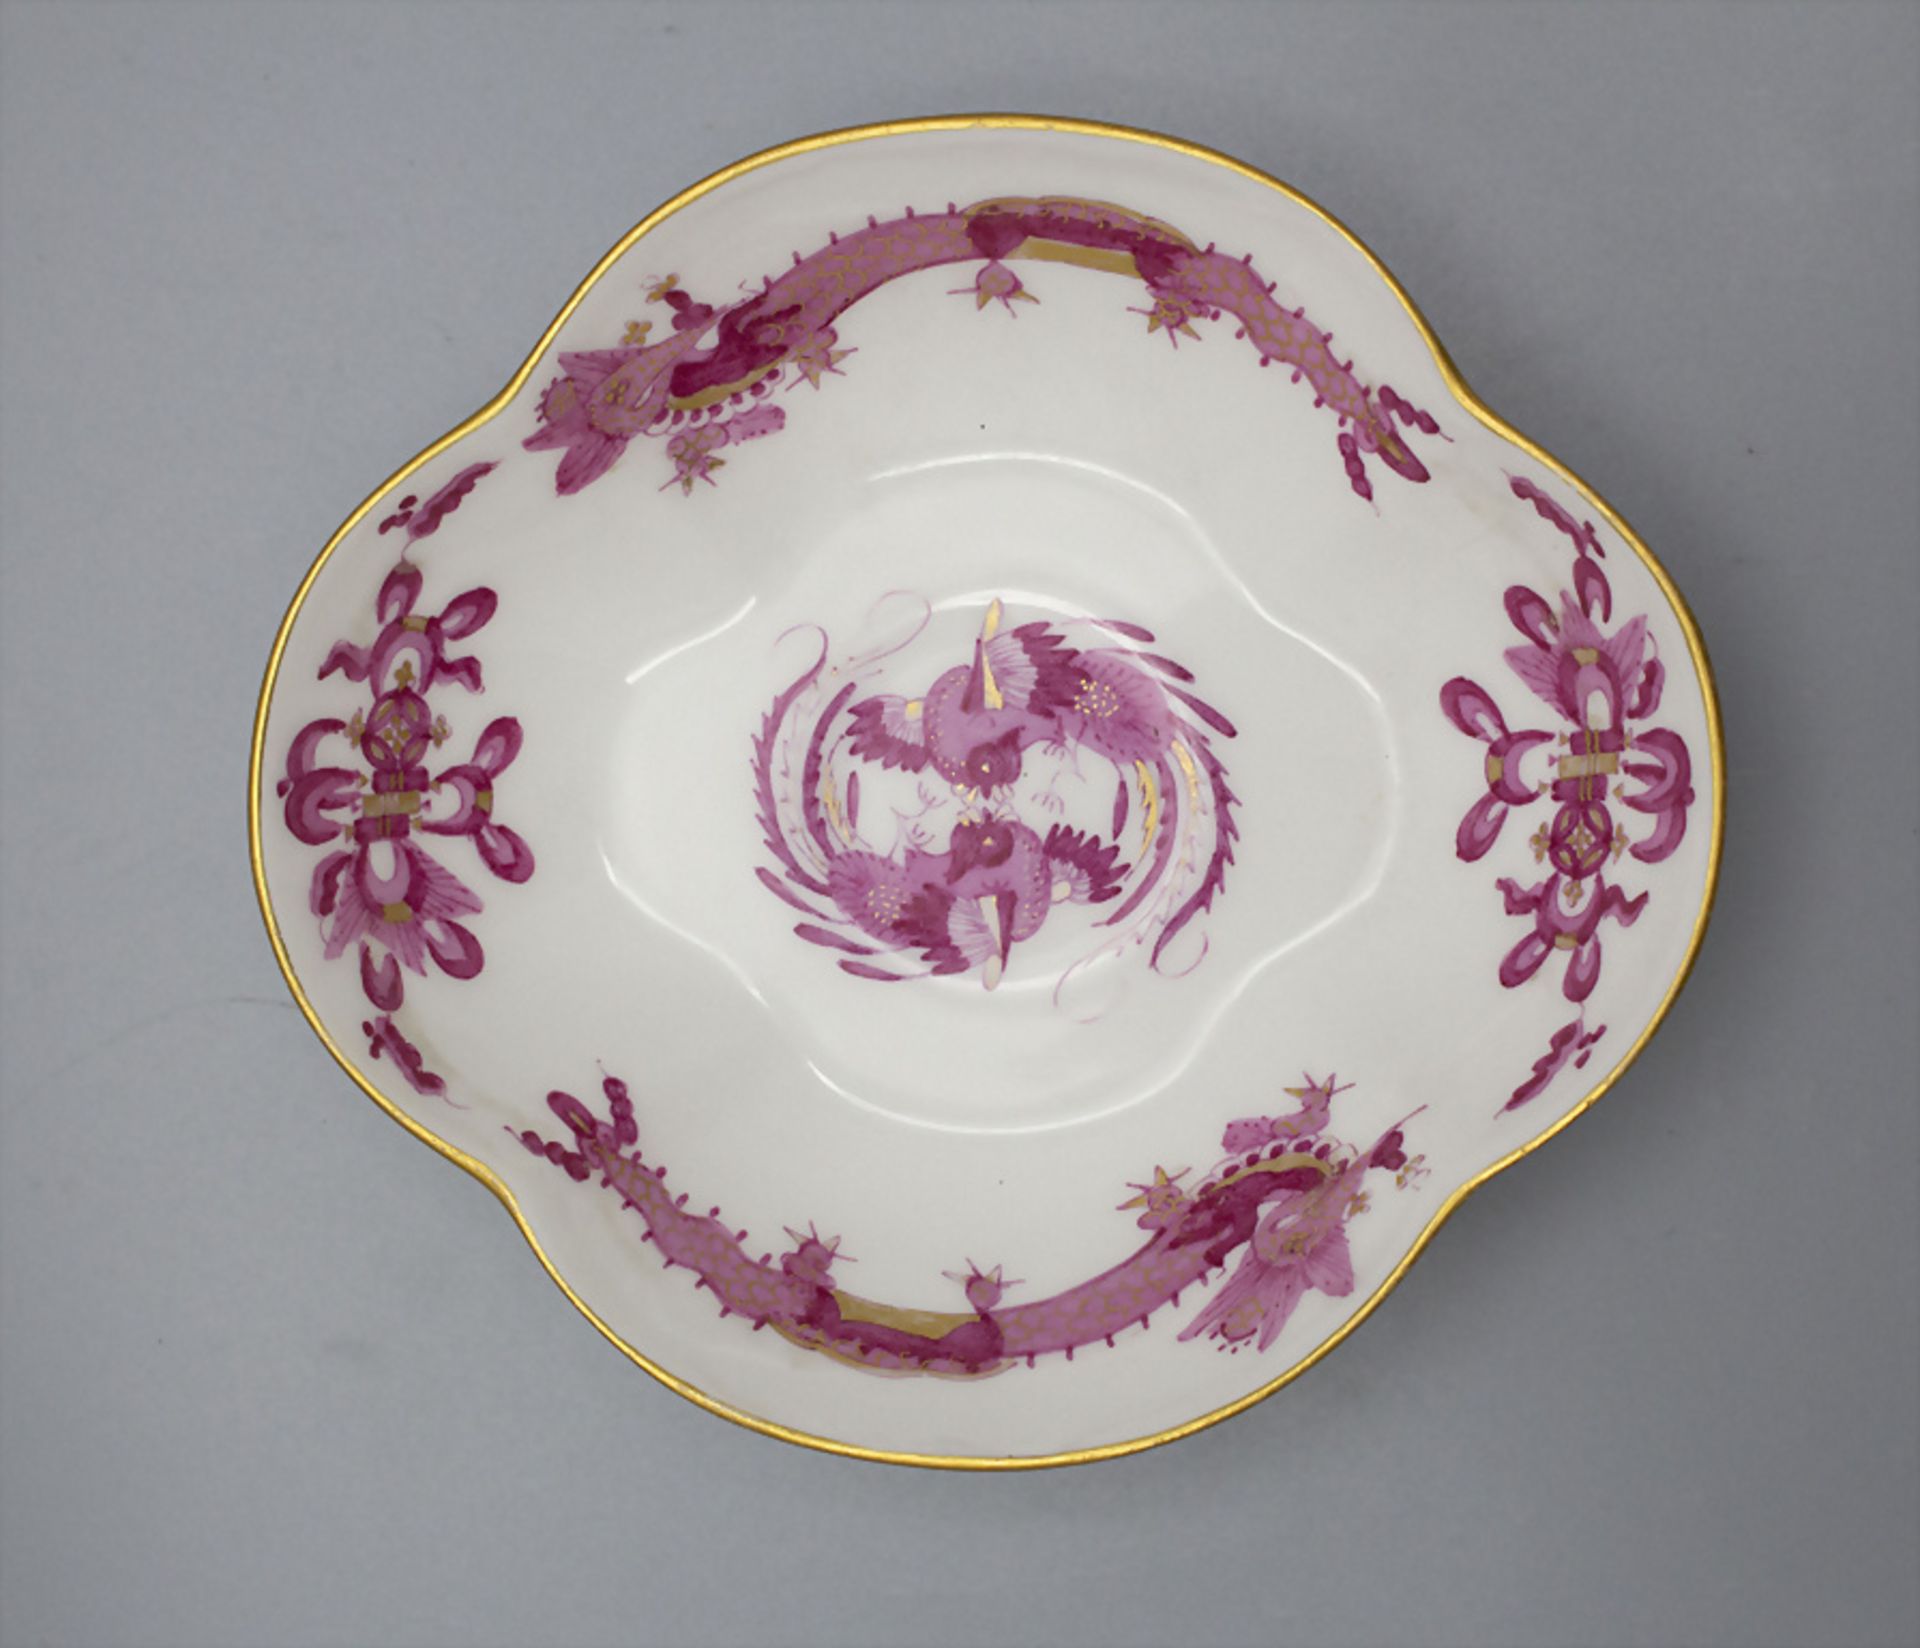 Zierschälchen 'Reicher Drache' / Unterschale / A decorative dish with 'Rich Dragon', Meissen, ... - Image 2 of 3